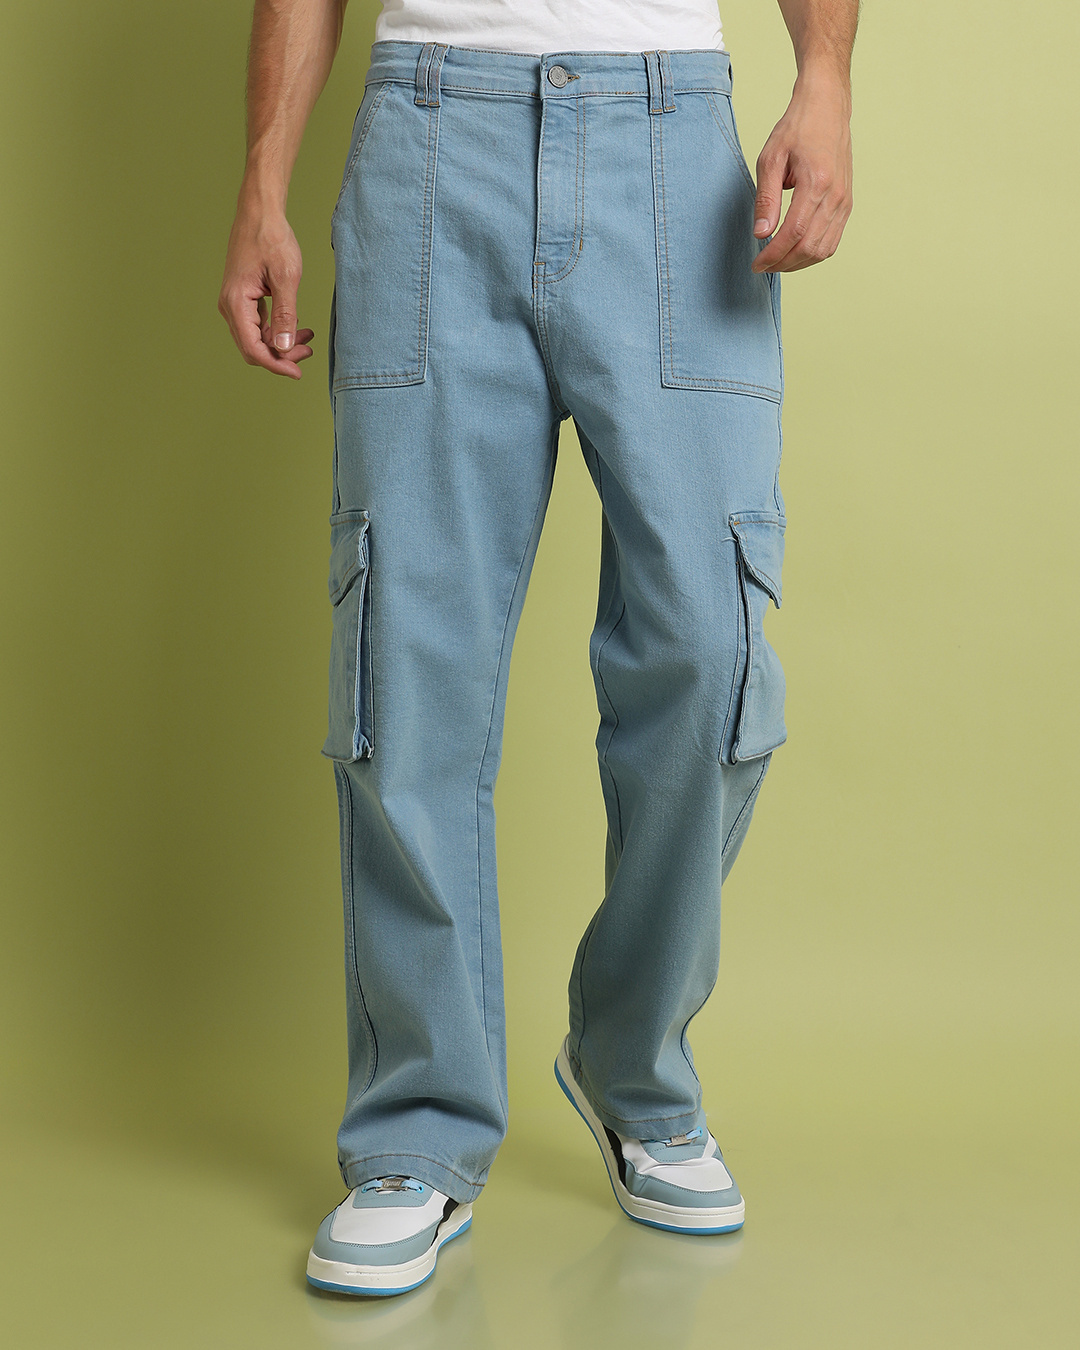 Buy Men's Blue Cargo Denim Jeans Online at Bewakoof